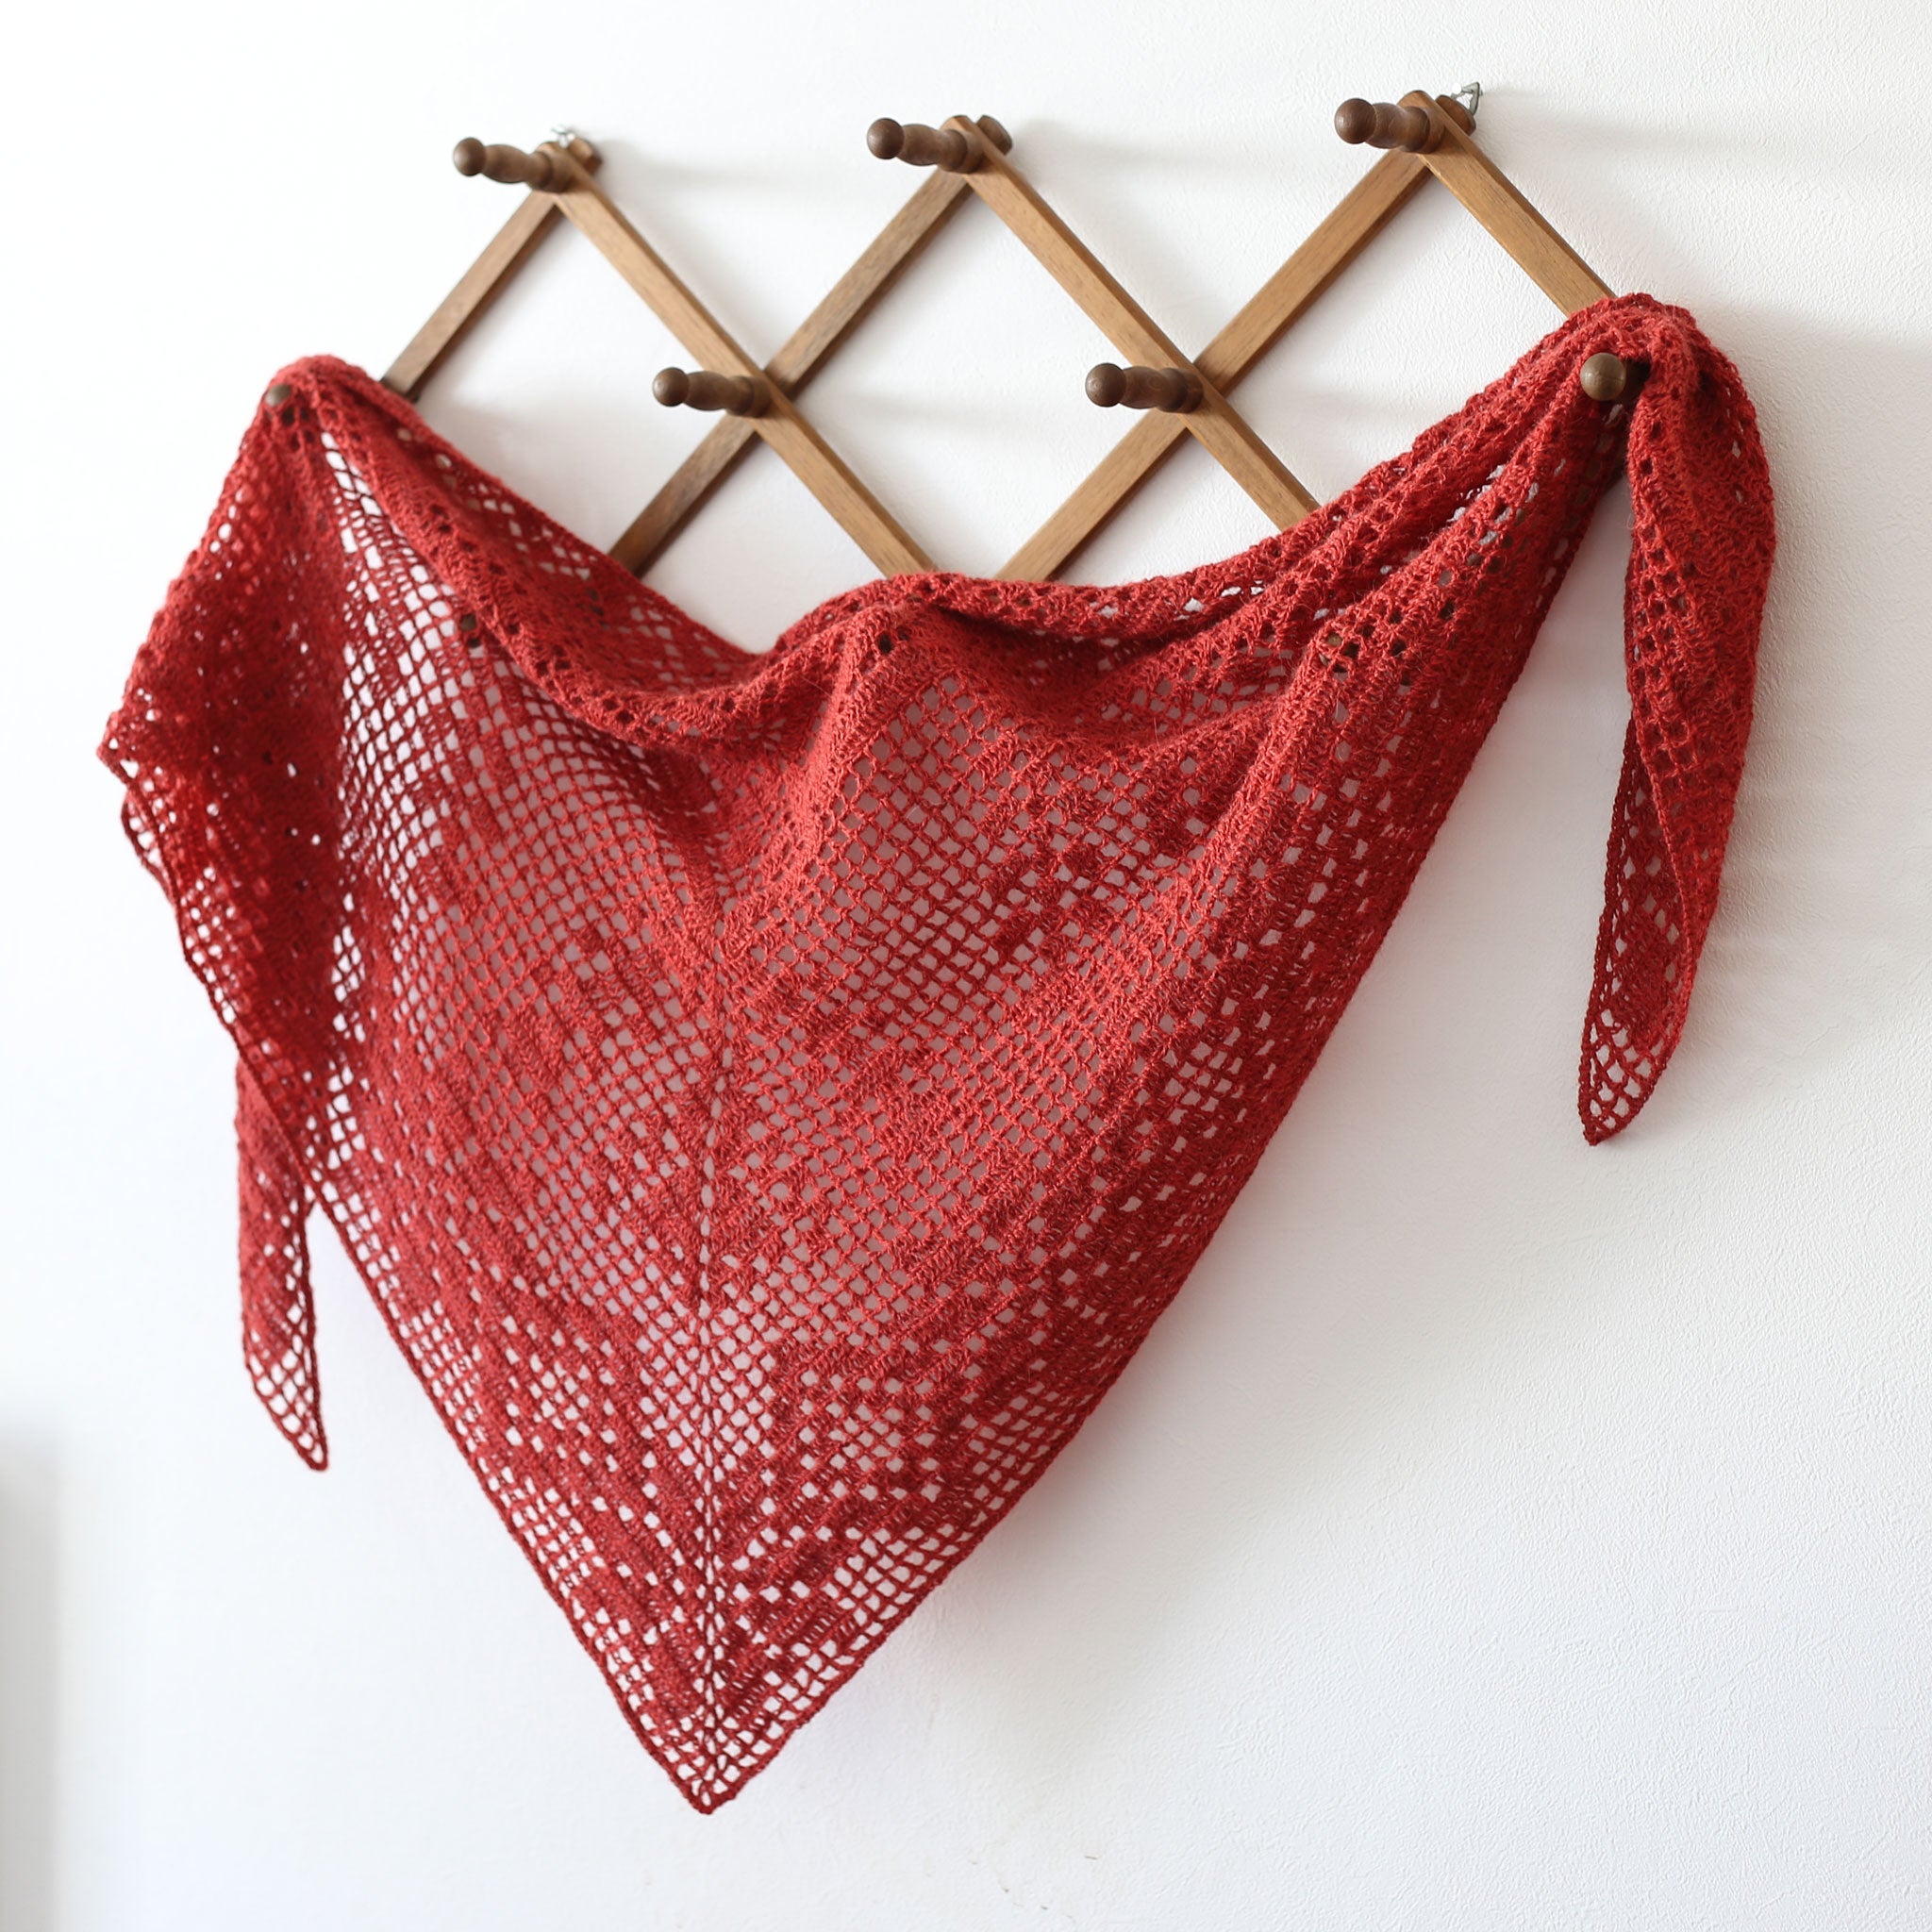 "Two Variations of Filet Crochet Shawls" crochet pattern